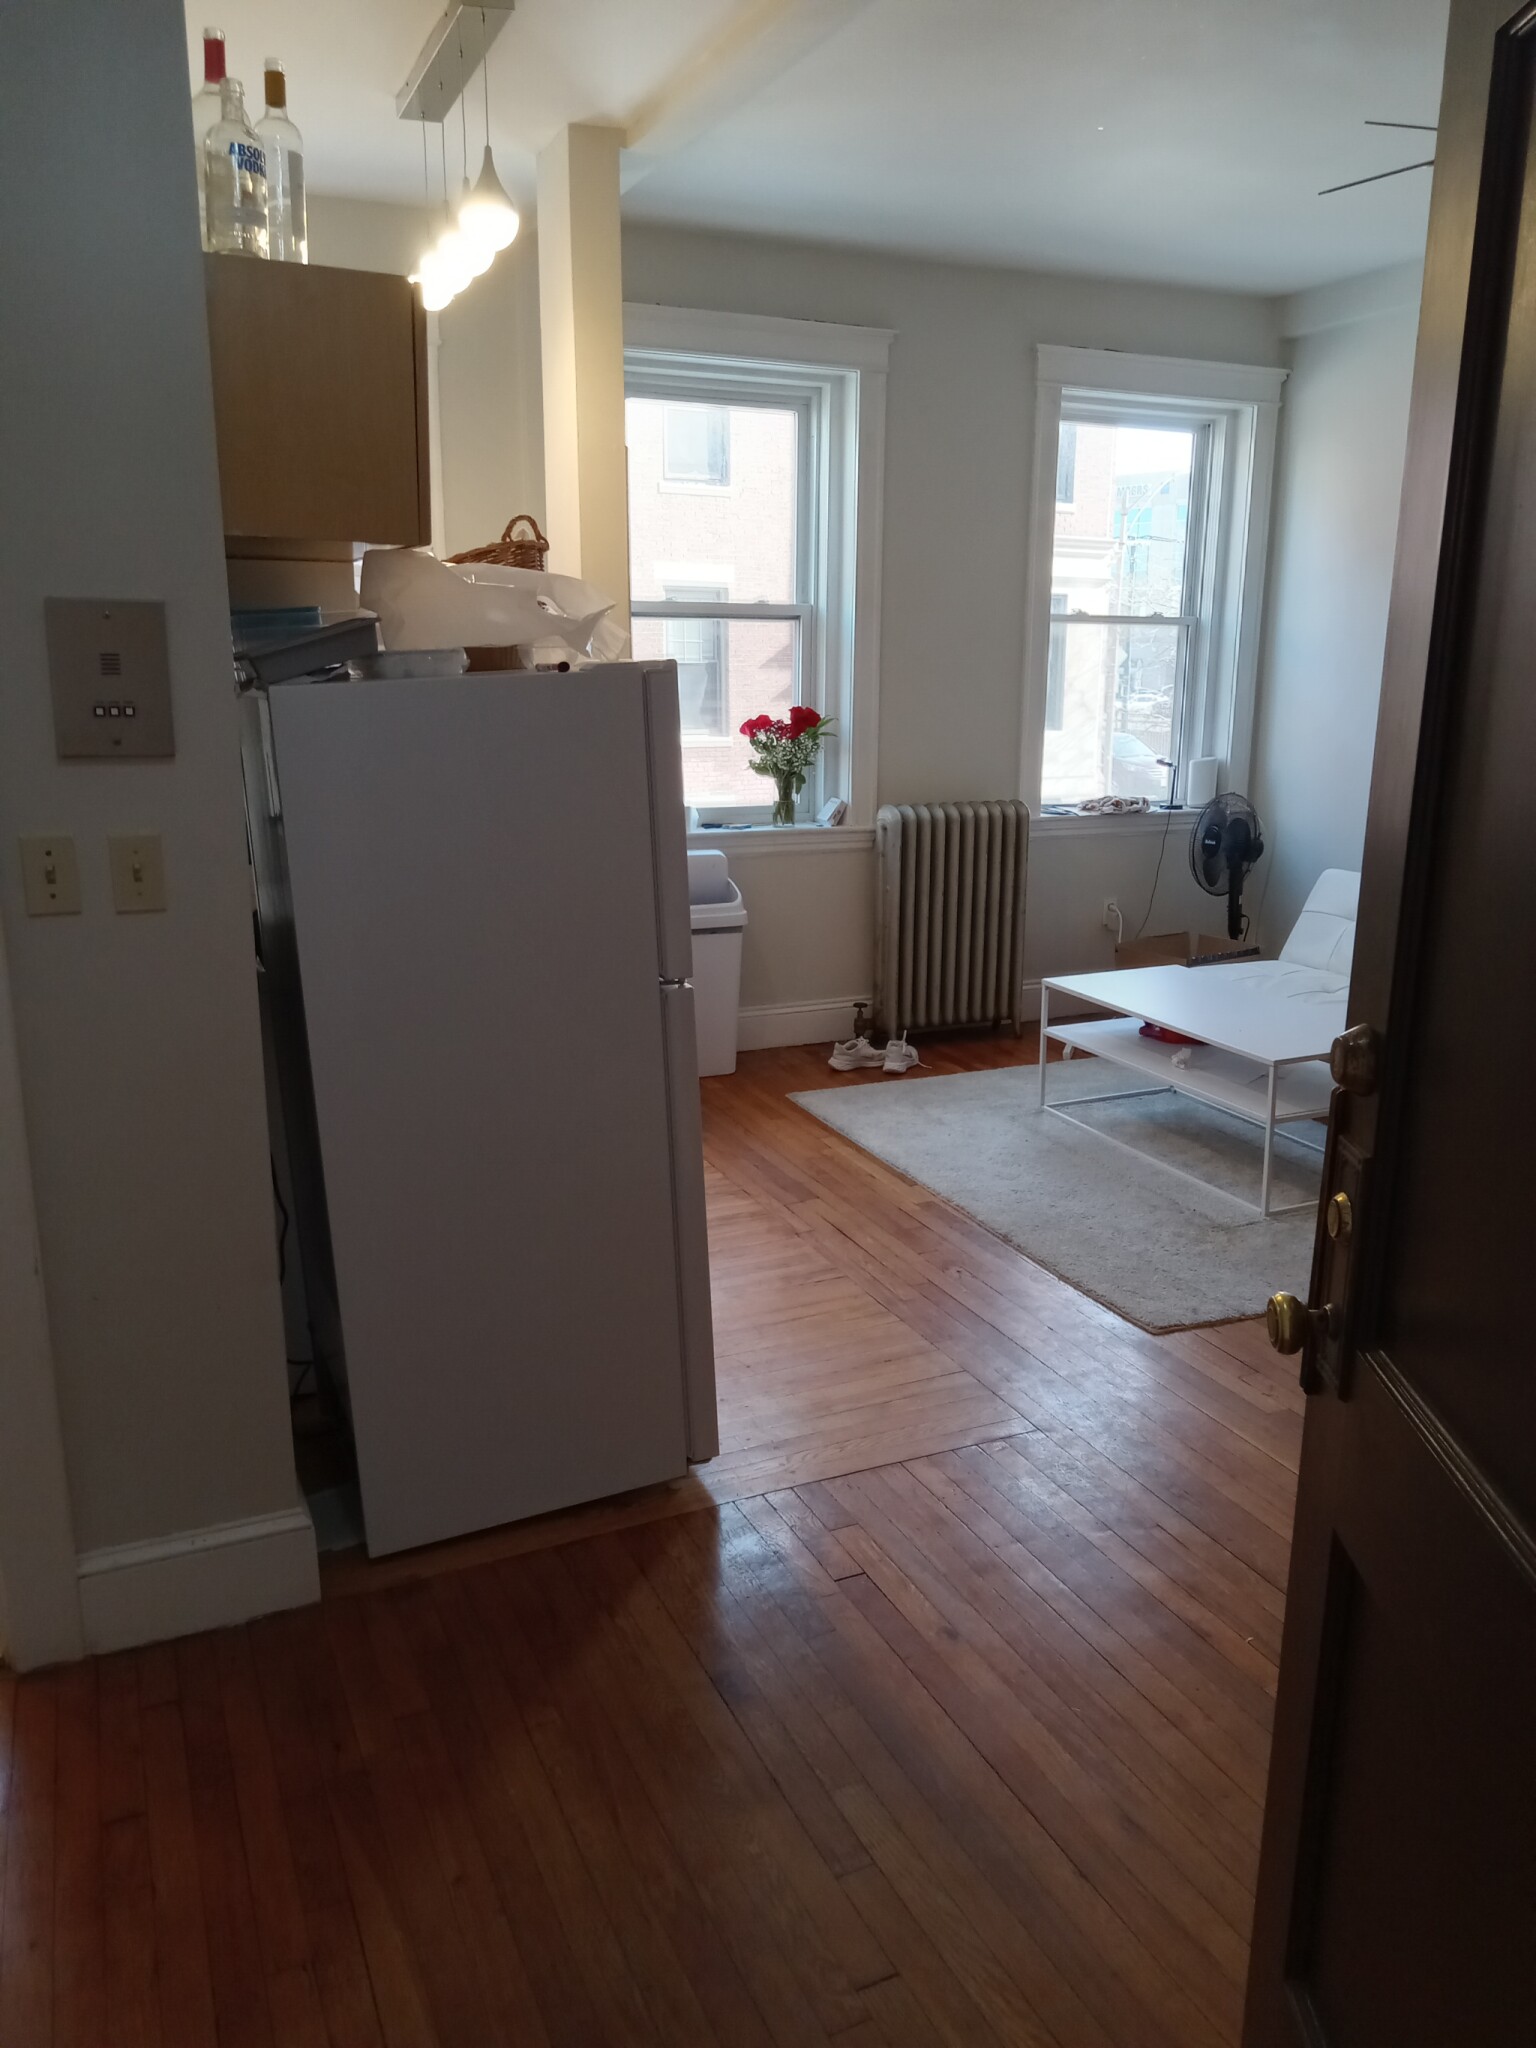 Photos of apartment on North Beacon,Boston MA 02134